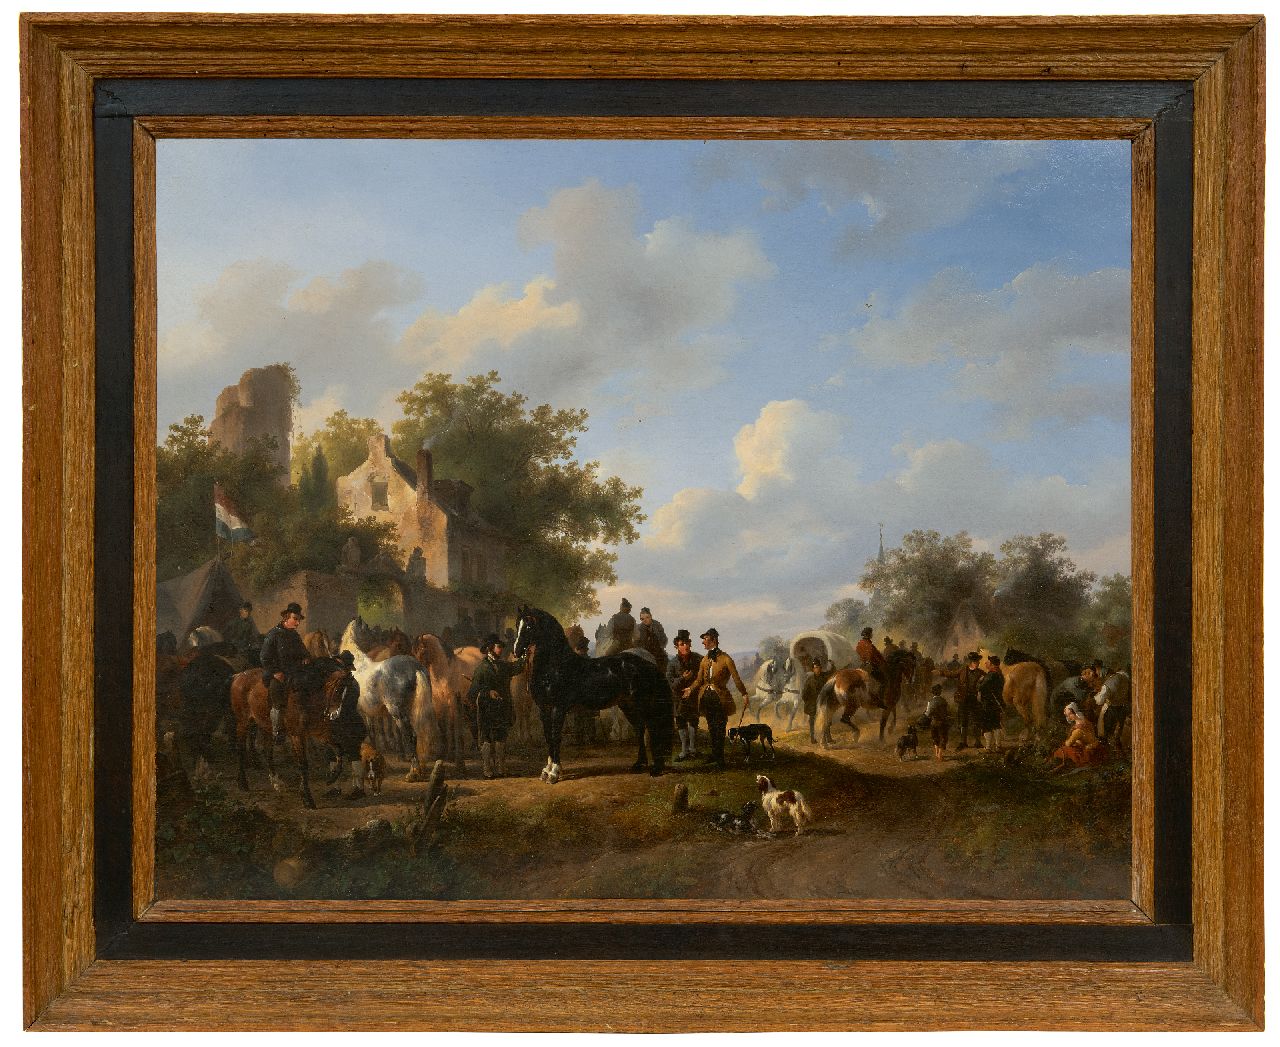 Verschuur W.  | Wouterus Verschuur | Schilderijen te koop aangeboden | Paardenmarkt, olieverf op doek 57,3 x 72,8 cm, gesigneerd middenonder